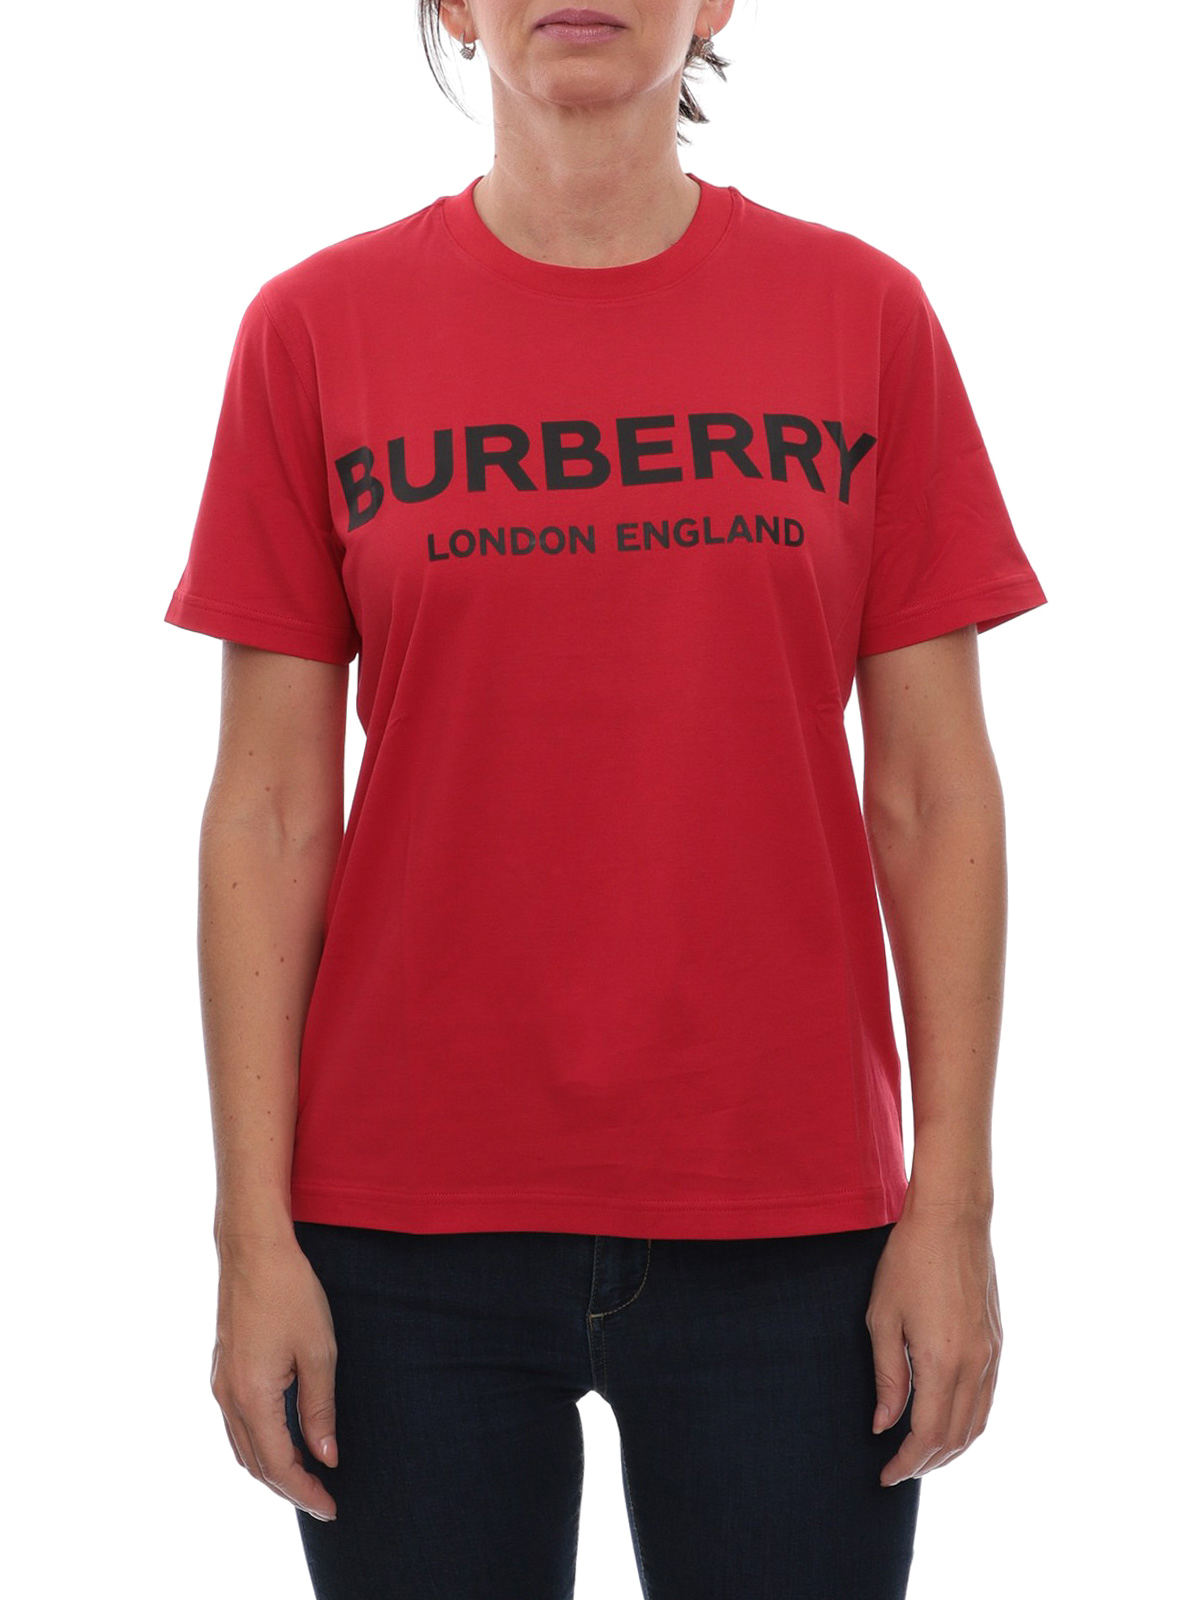 Camisetas Burberry - Camiseta - Dovey - 8021272 | iKRIX tienda online